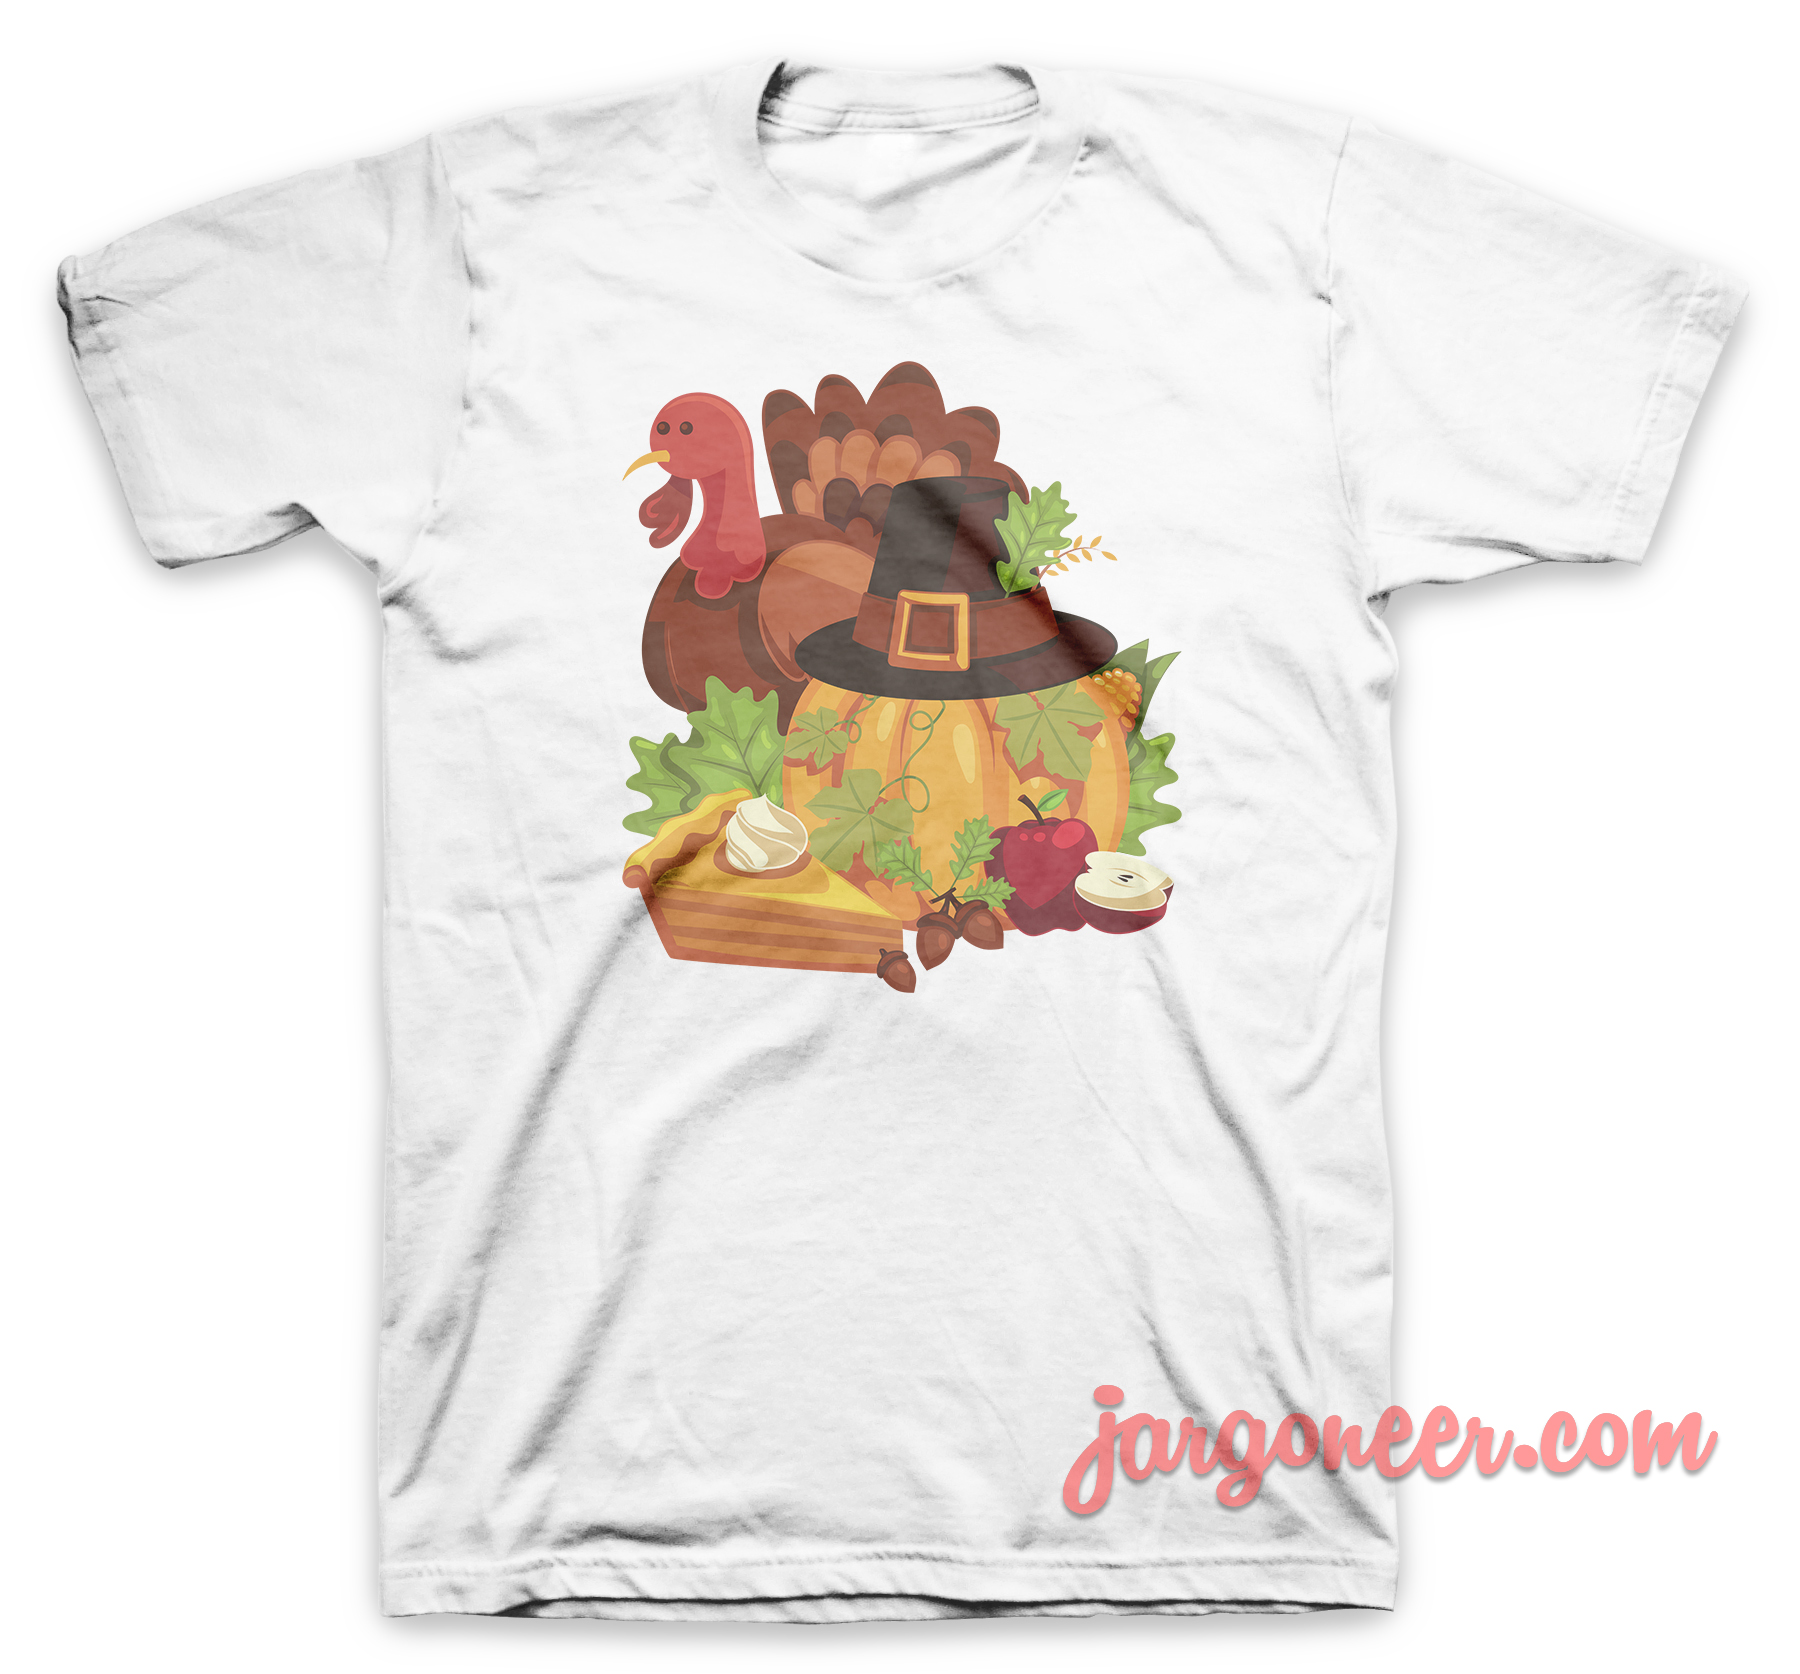 Happy Thanksgiving Elements White T Shirt - Shop Unique Graphic Cool Shirt Designs